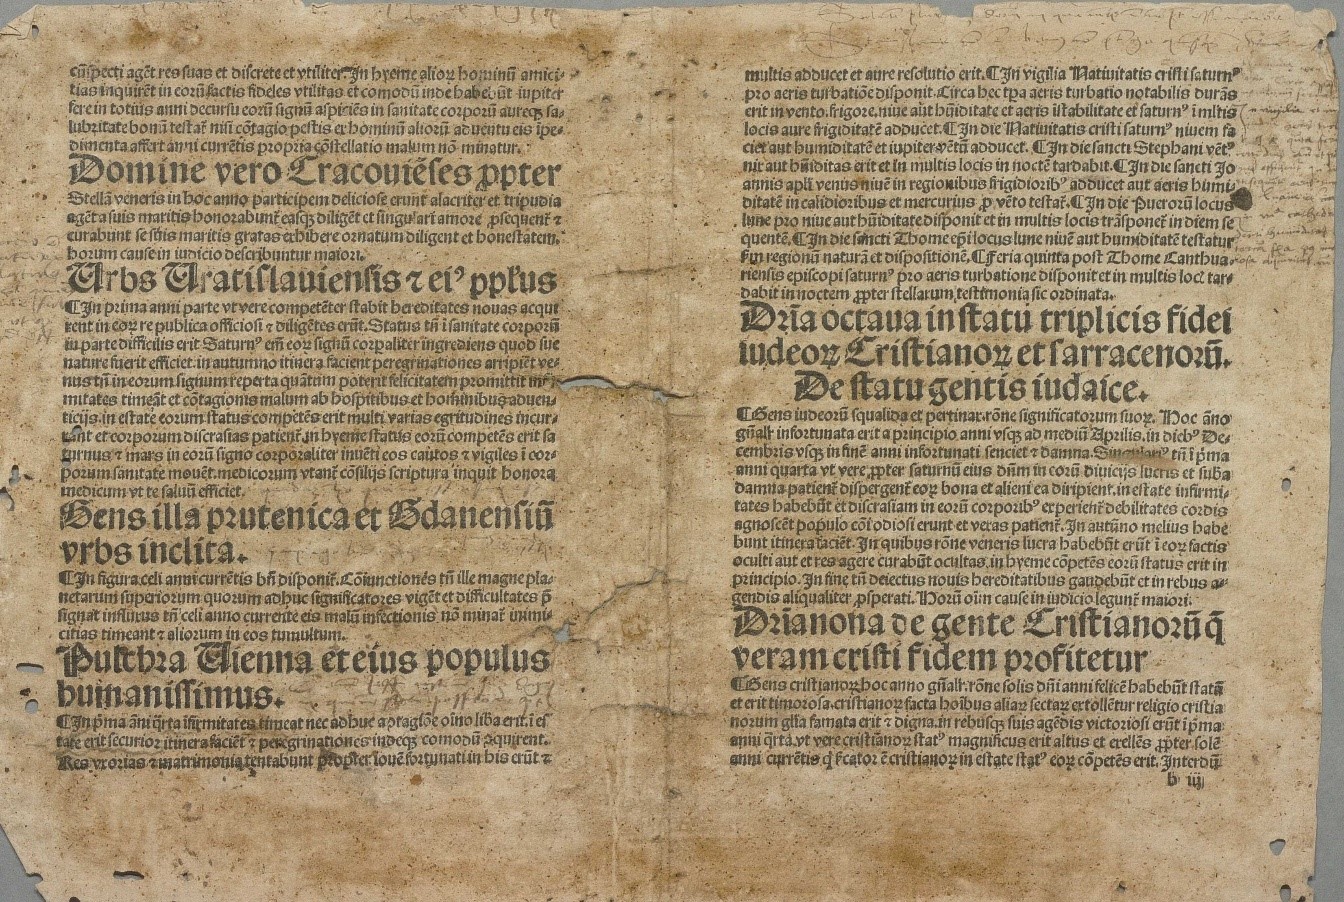 Färgfoto av ett tvåsidigt gulnat tryck på latin, med flera hål och revor.